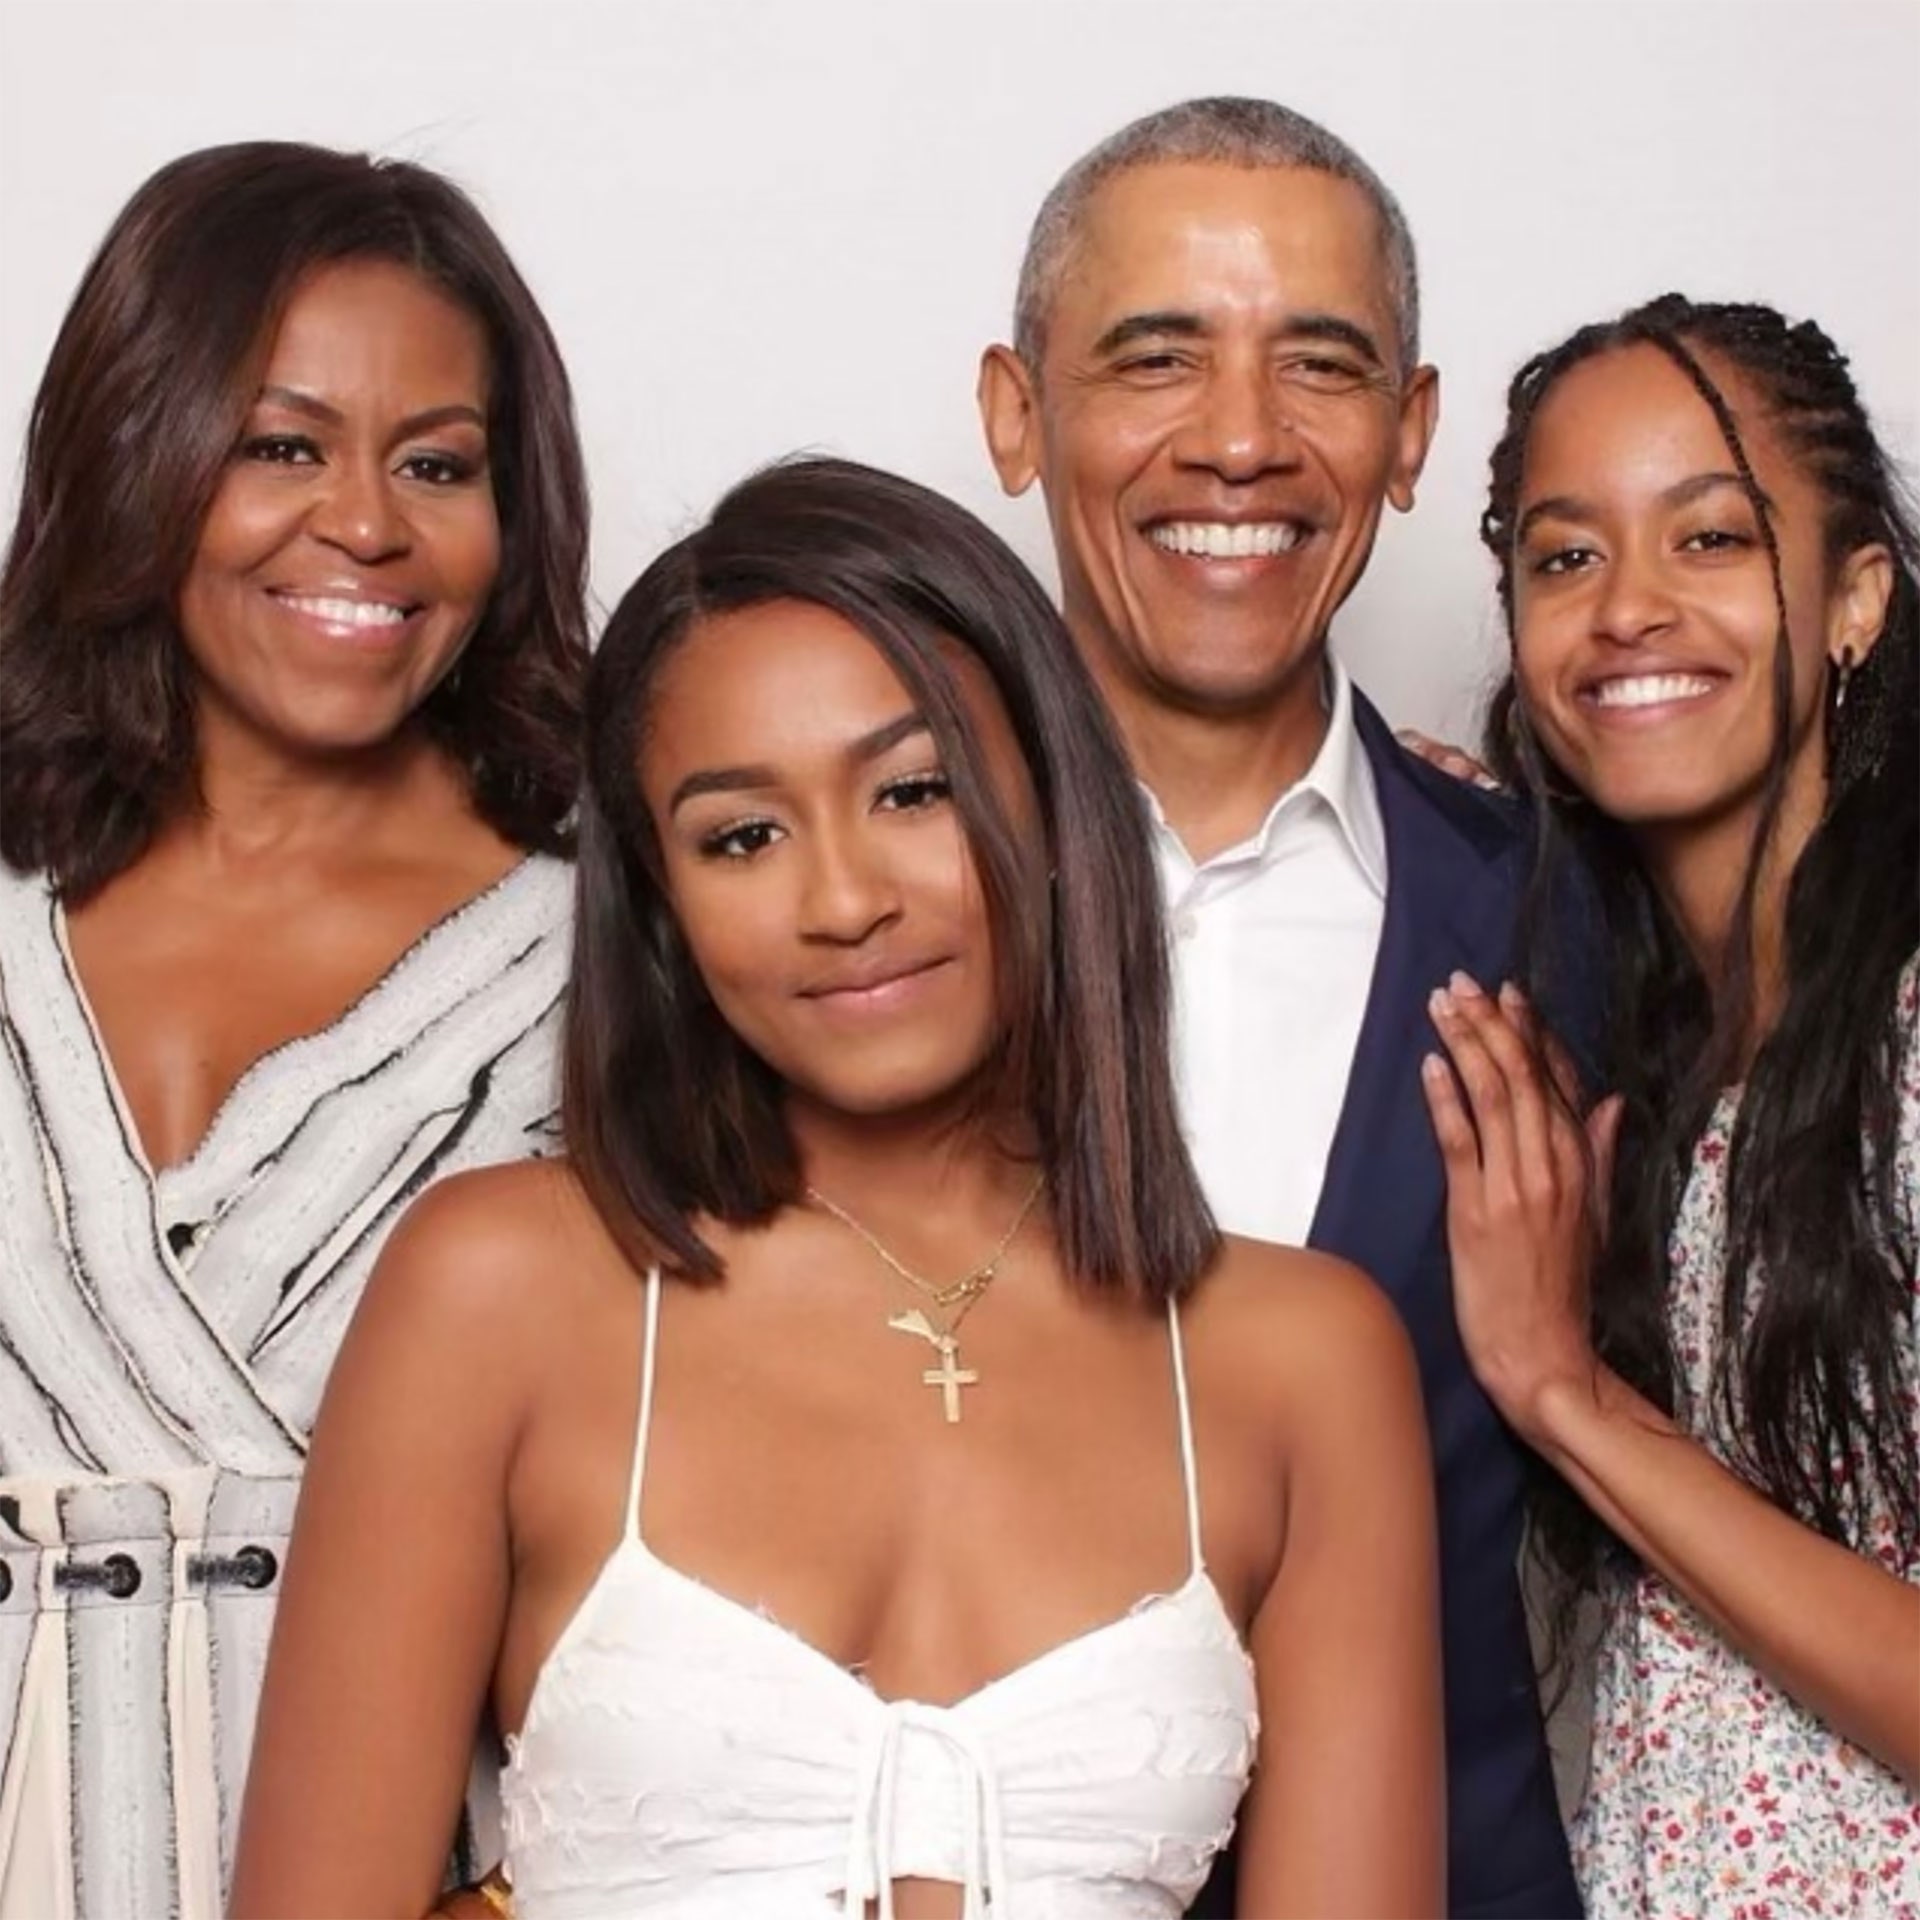 Con gái út nhà Obama sau 6 năm rời Nhà Trắng: Rũ bỏ hình tượng chỉn chu, gây sốc bởi phong cách phóng khoáng - Ảnh 3.